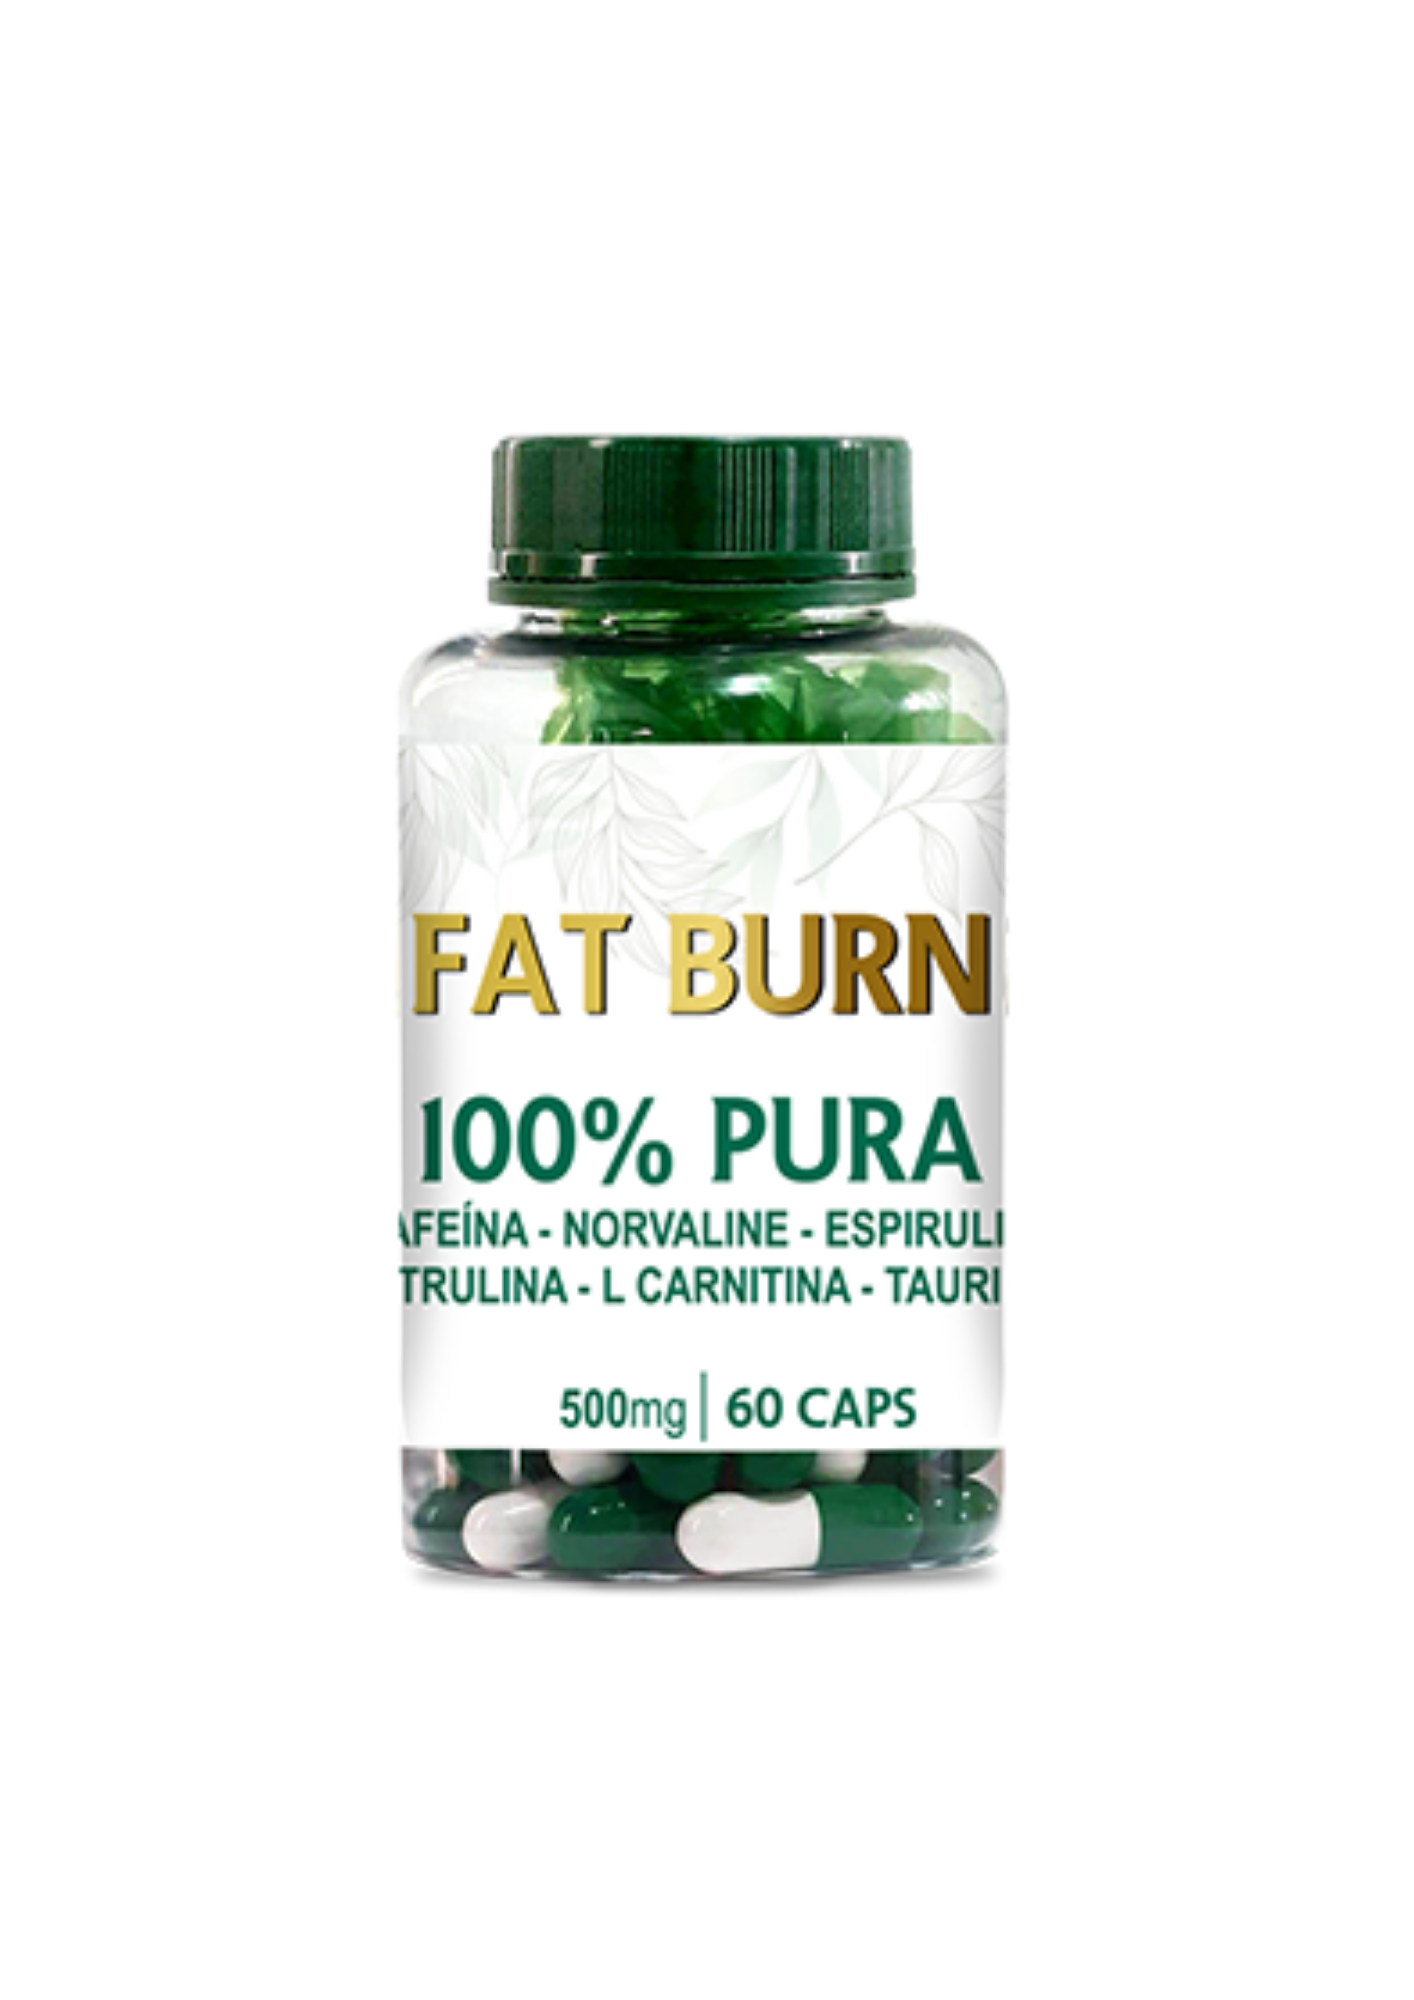 Fat Burn 500mg - Cápsula Composta<br>Linha de Cápsulas Fitoterápicas - R$ 125,99